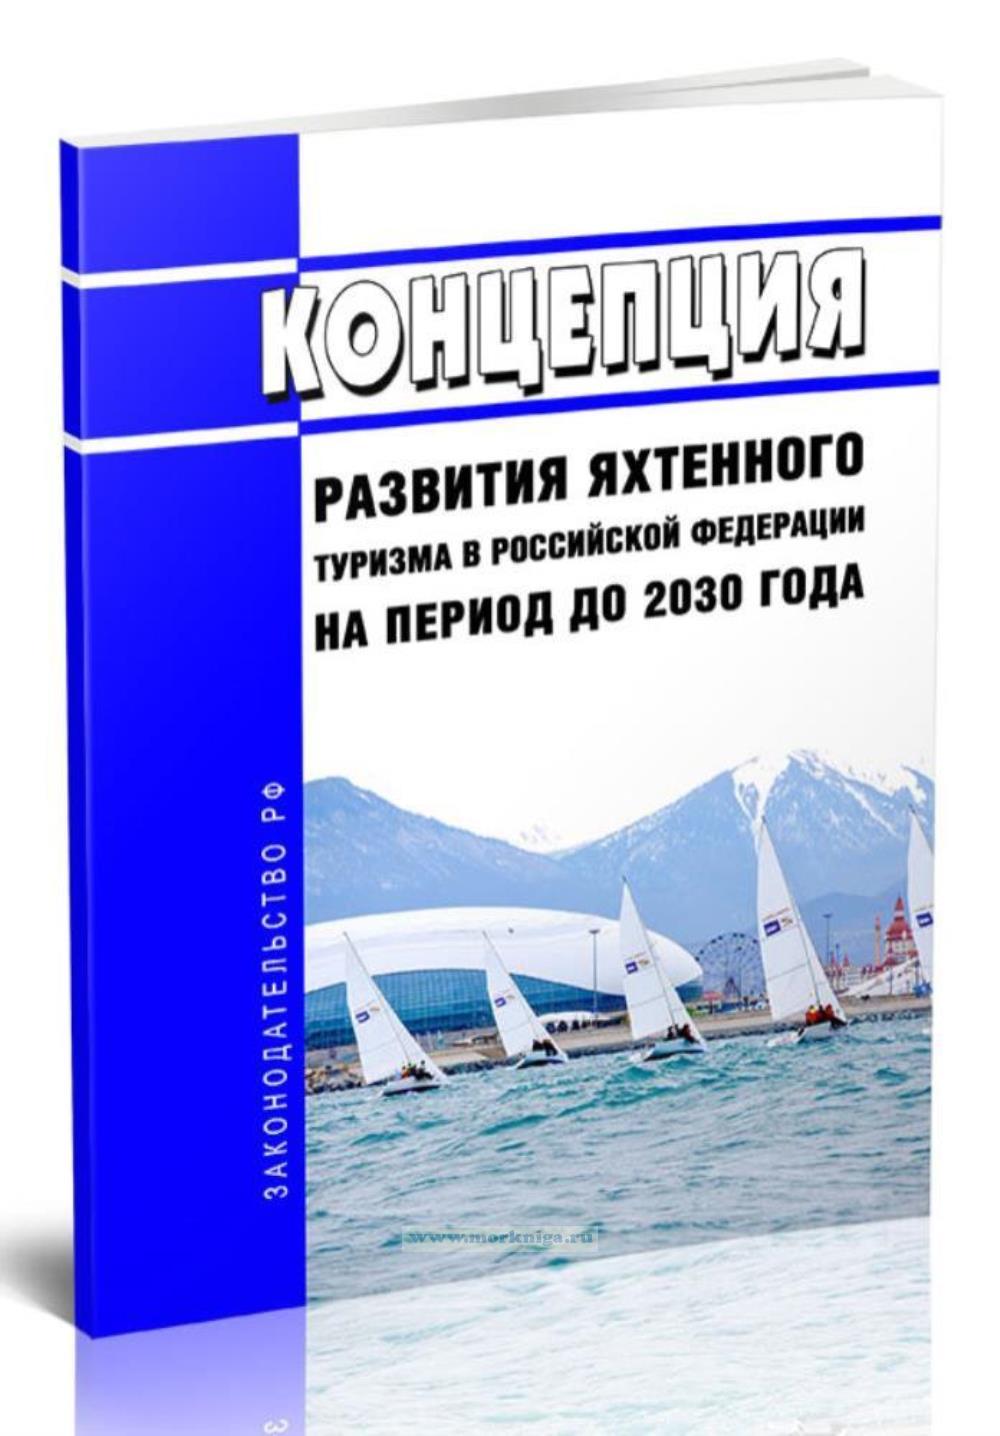 Концепция развития яхтенного туризма в Российской Федерации на период до 2030 года 2024 год. Последняя редакция